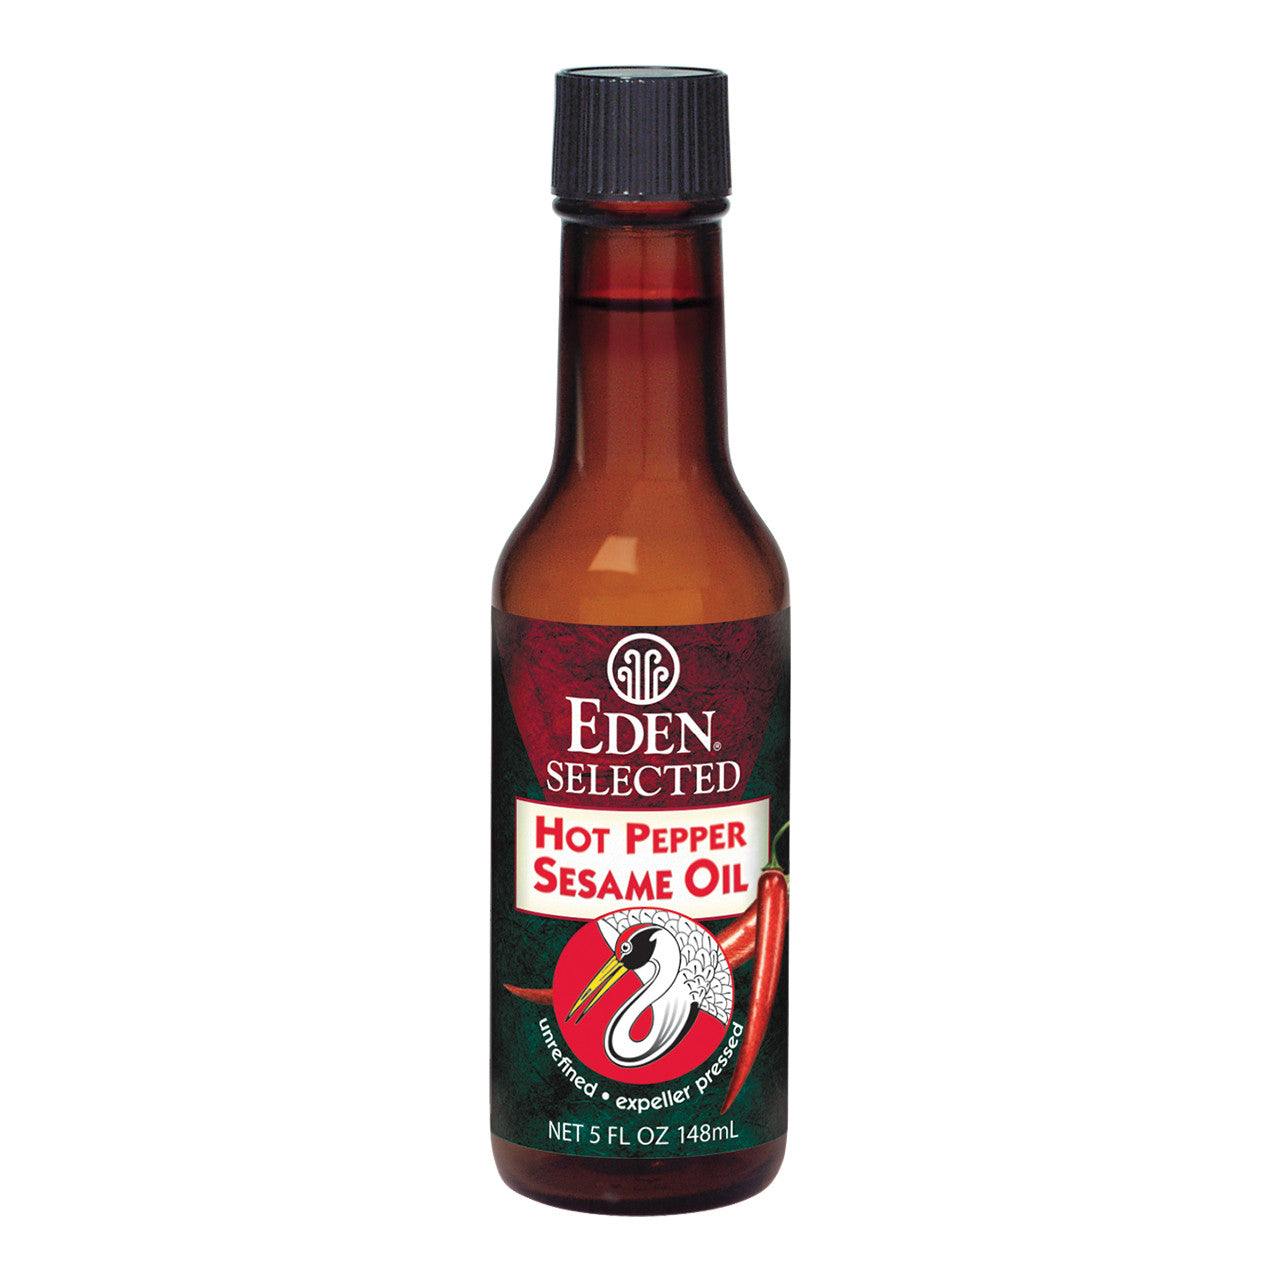 Eden Hot Pepper Sesame Oil